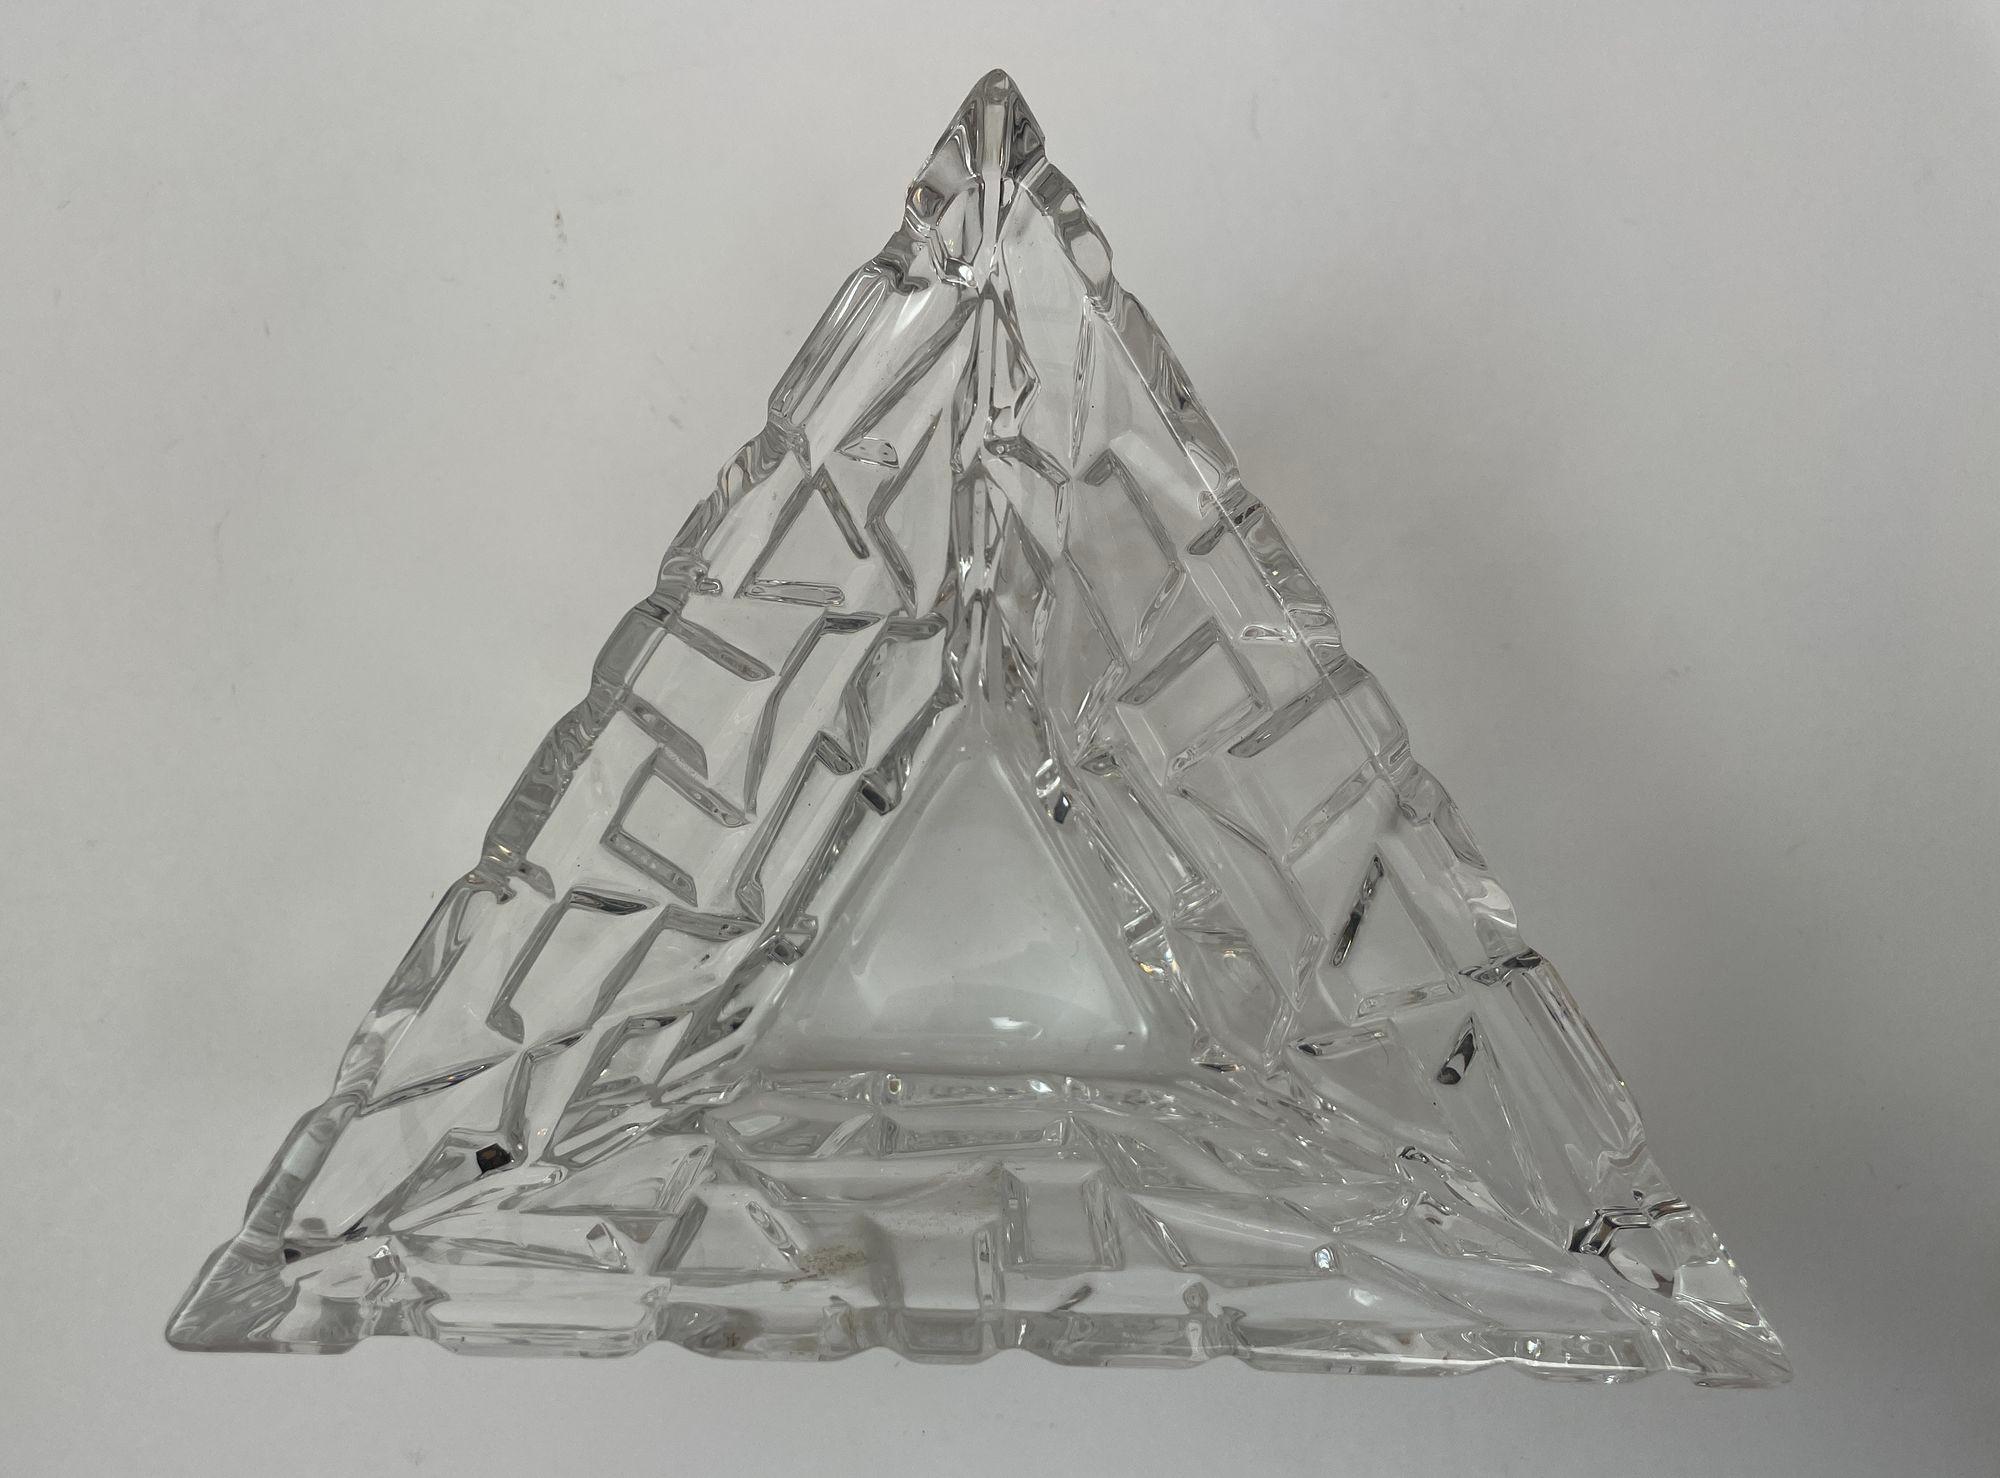 Tiffany & Co Sierra Triangular Clear Cut Crystal Bowl Ashtray.
Ce magnifique plat à bonbons en cristal taillé de Tiffany & Co. est un must pour tout collectionneur.
Avec sa belle forme triangulaire et sa couleur claire, il est parfait pour toutes